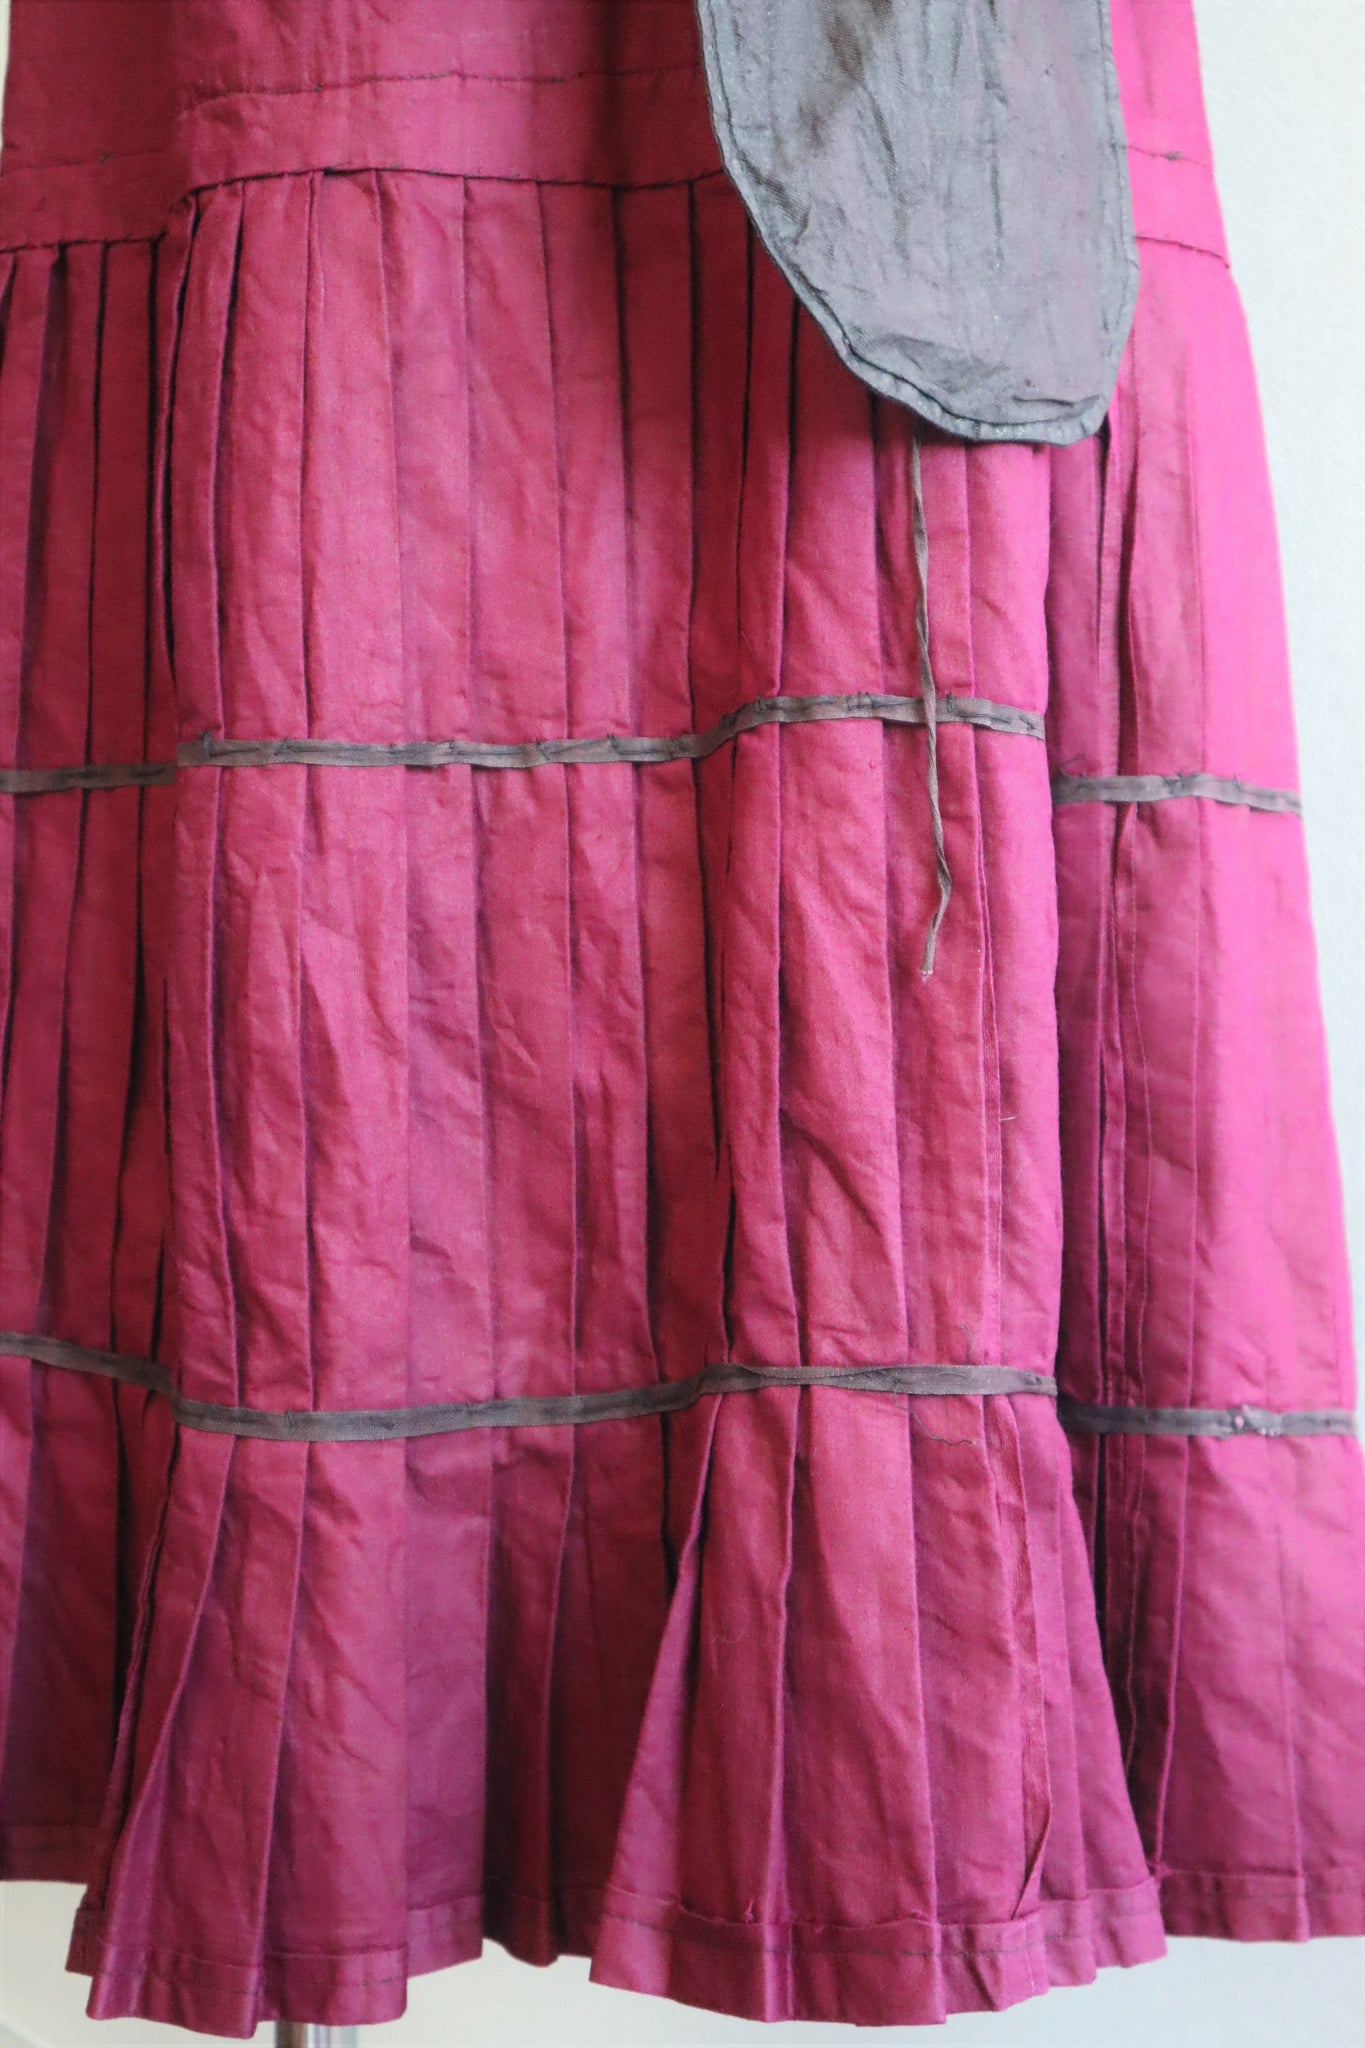 19th Edwardian Burgundy Skirt